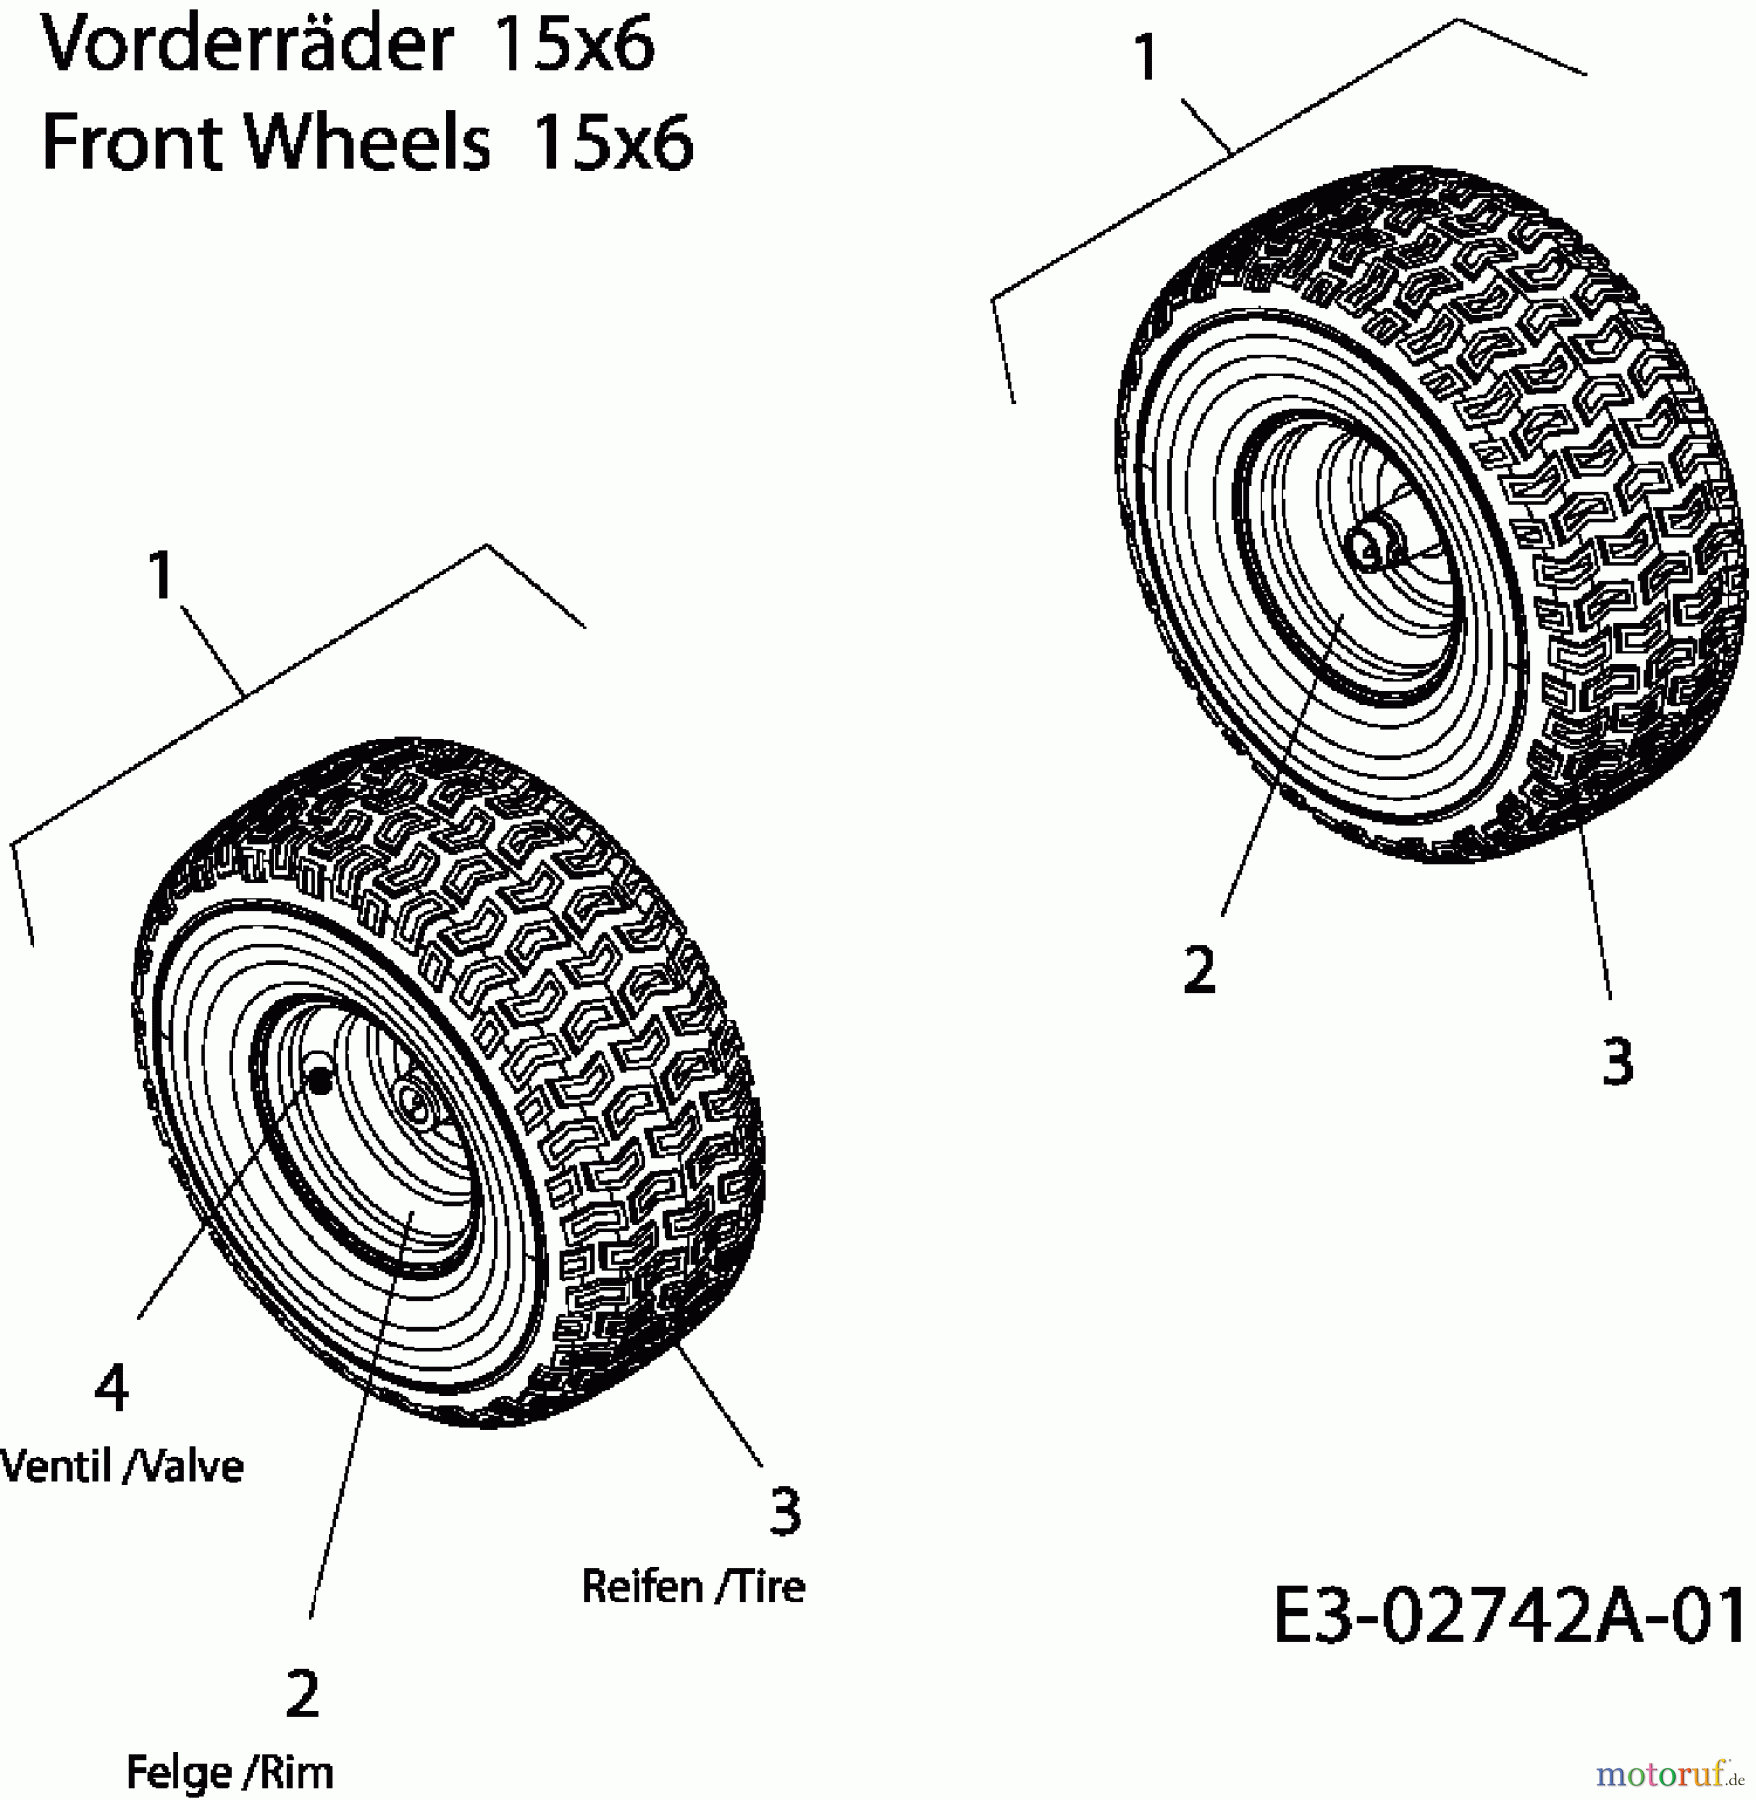  Efco Lawn tractors Formula 97/13.5 T 13AH779F637  (2006) Front wheels